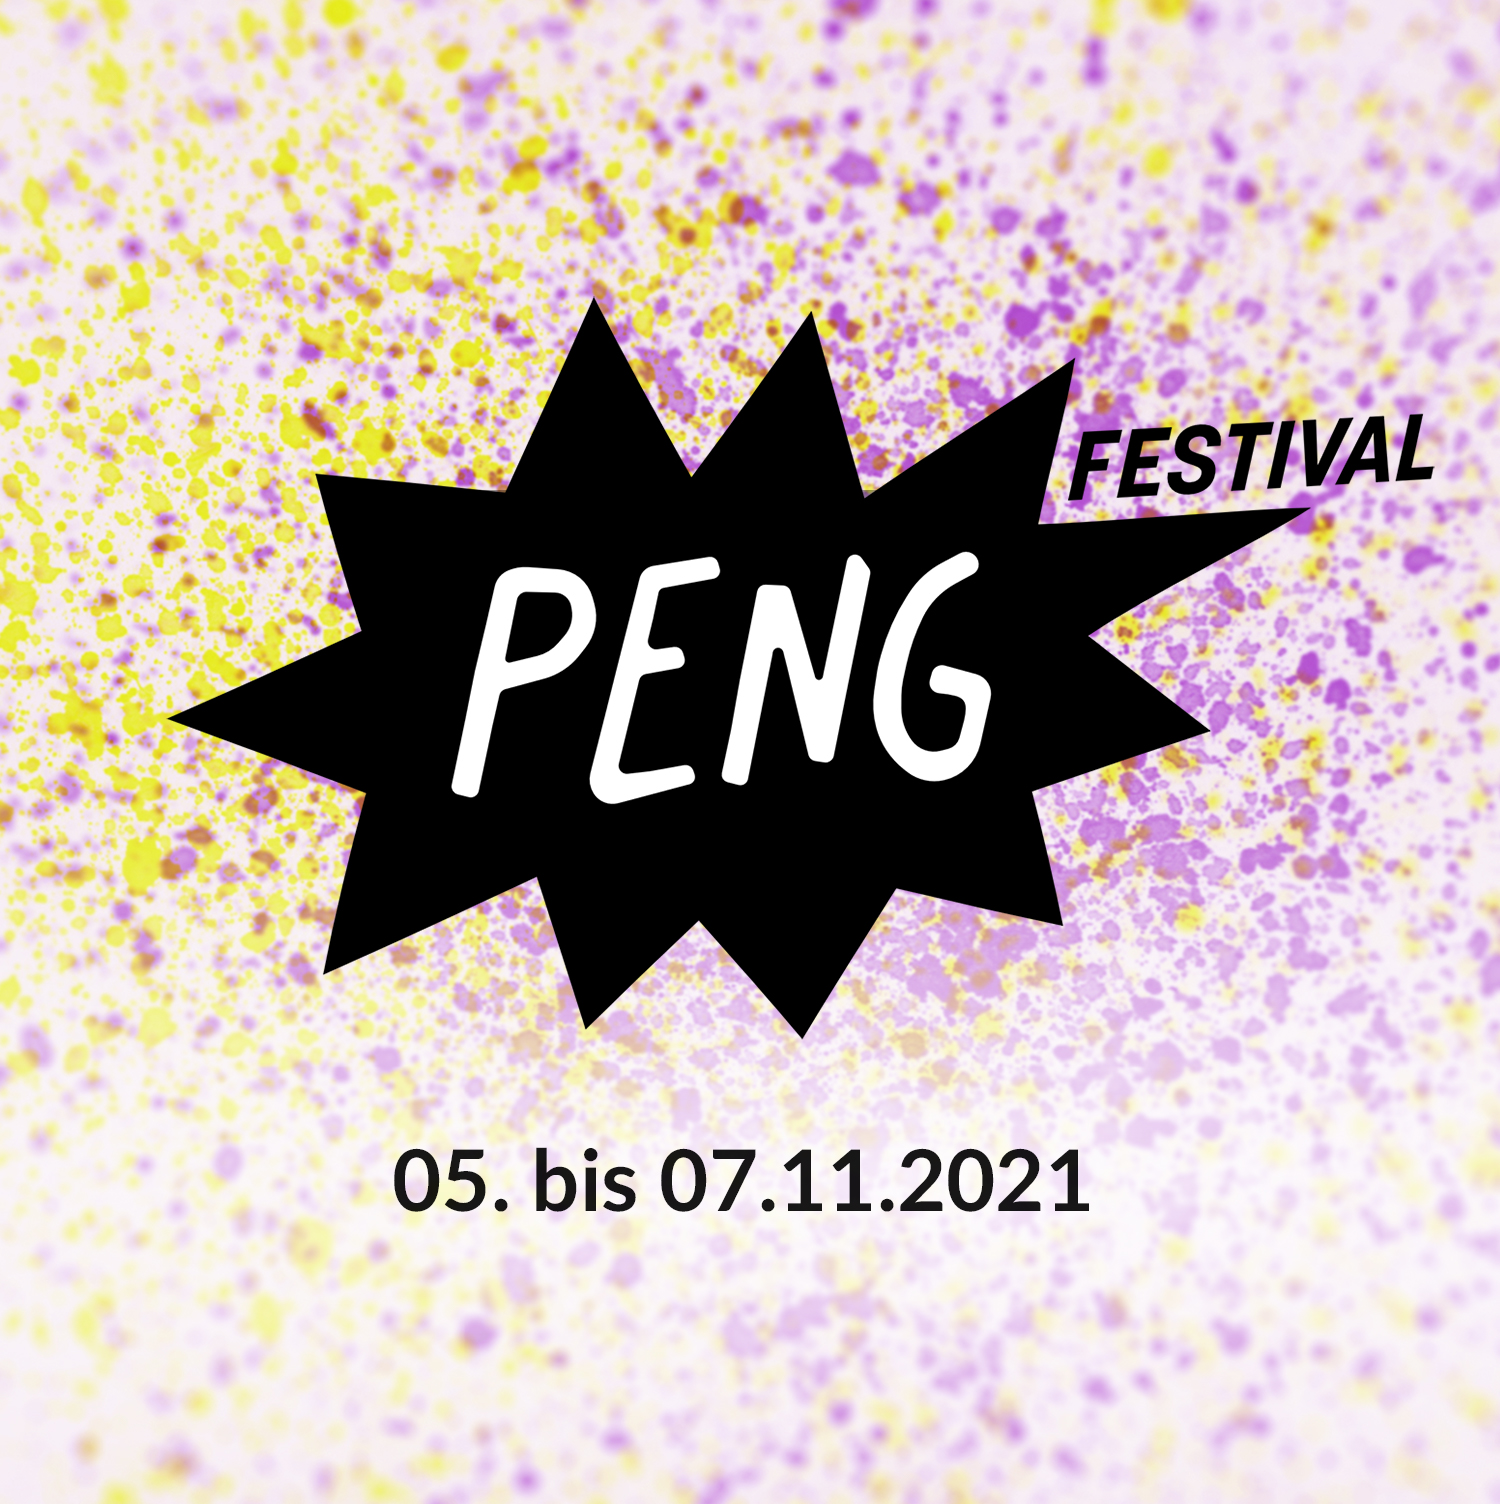 PENG Festival